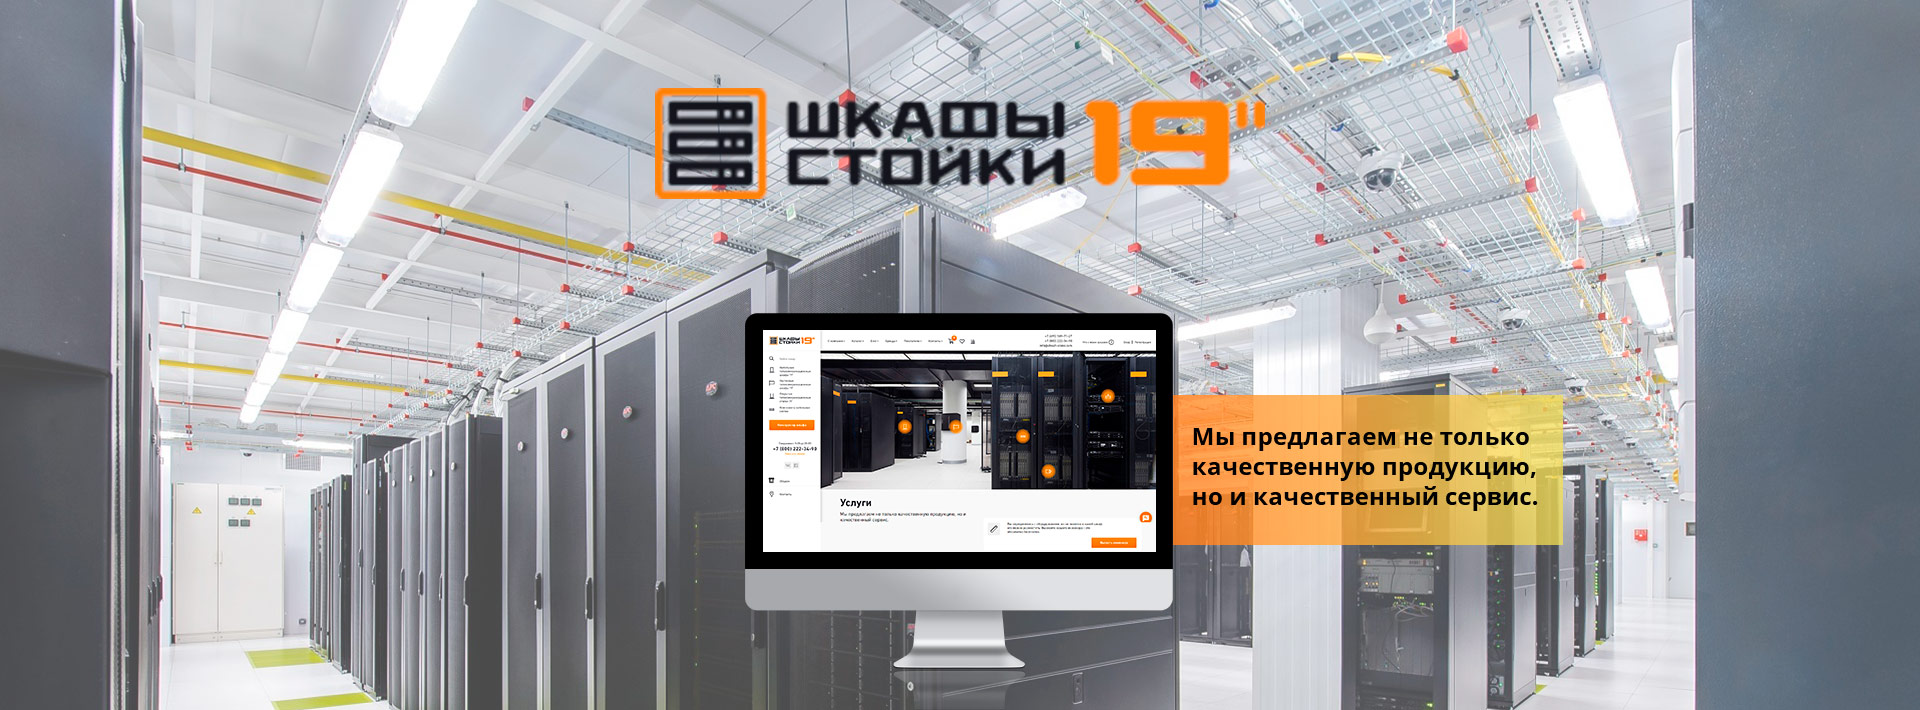 Создание сайтов в москве заказать команда профессии по созданию сайтов